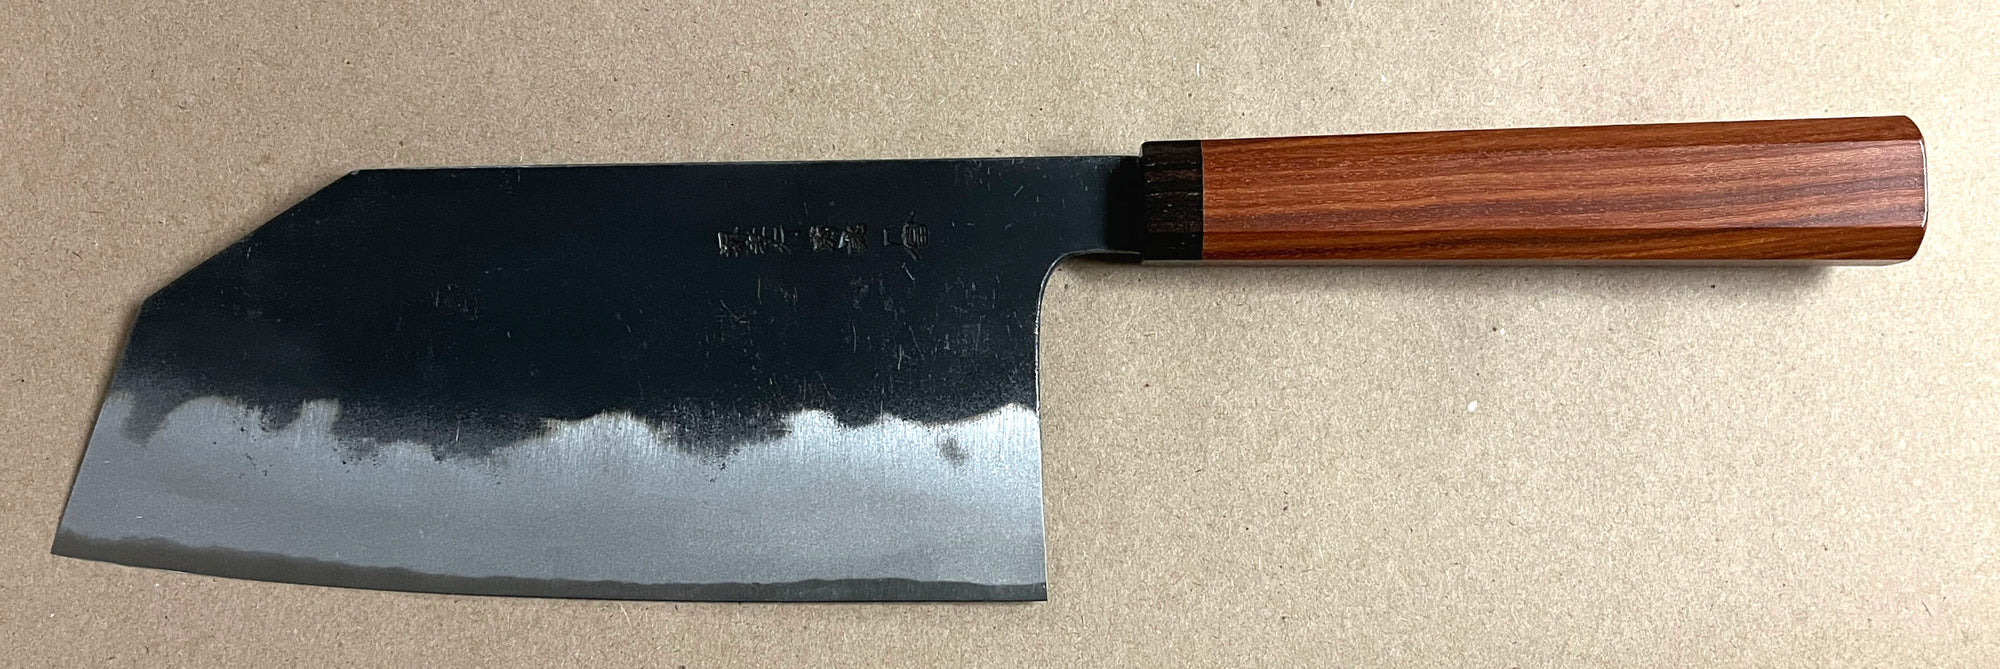 Sakai Takayuki Tall Bunka Knife, Carbon Steel, 180mm (7.1")